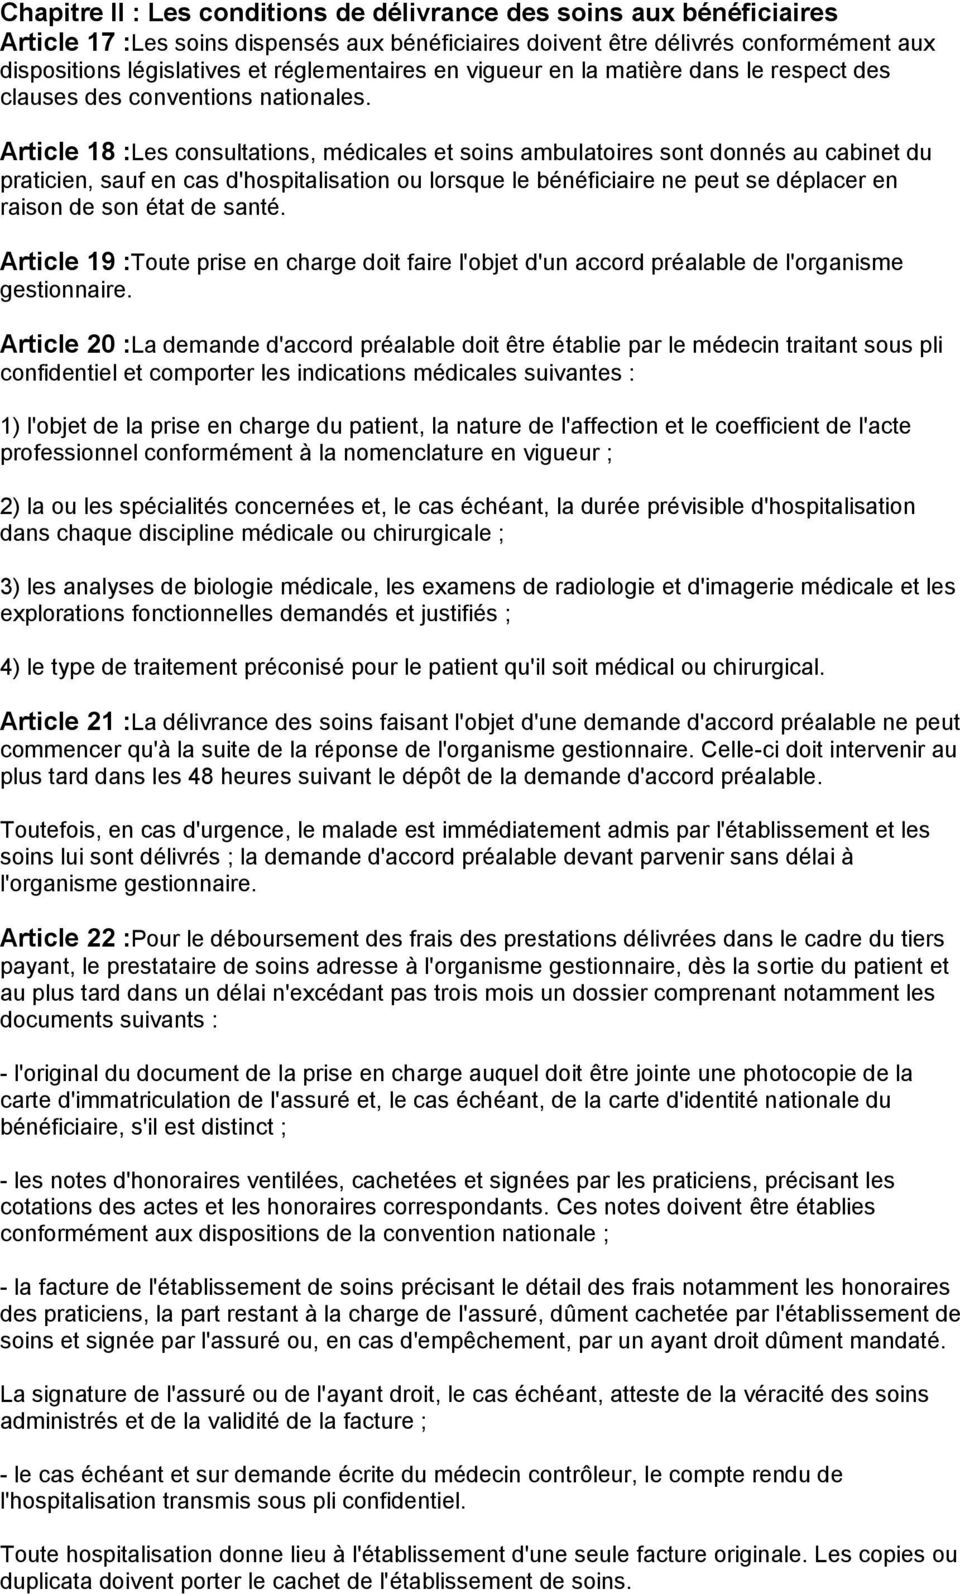 Article 18 :Les consultations, médicales et soins ambulatoires sont donnés au cabinet du praticien, sauf en cas d'hospitalisation ou lorsque le bénéficiaire ne peut se déplacer en raison de son état